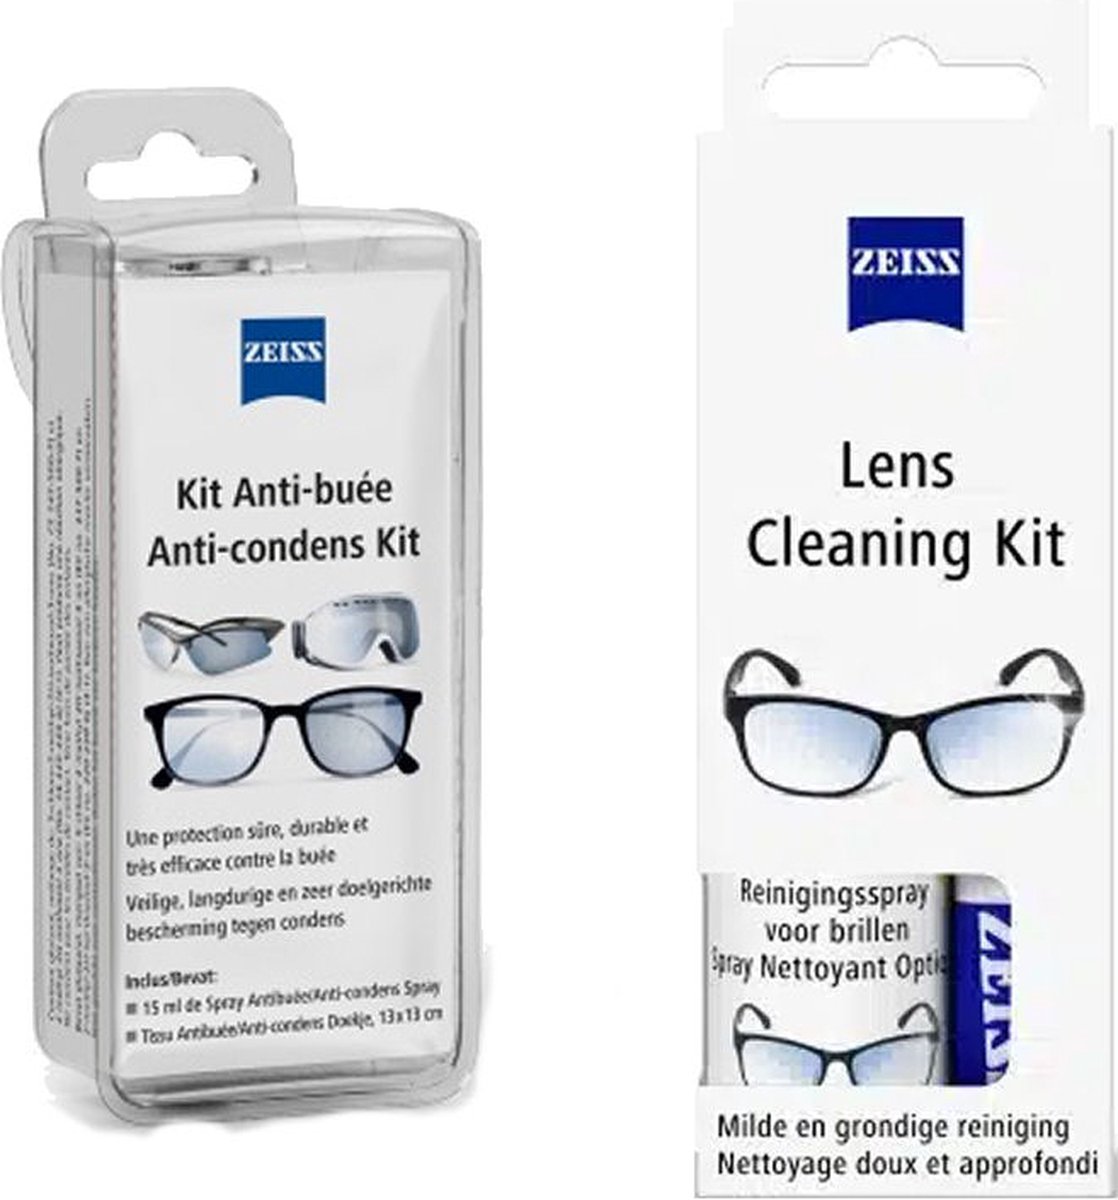 Spray nettoyant pour lentilles de lunettes, produit de nettoyage